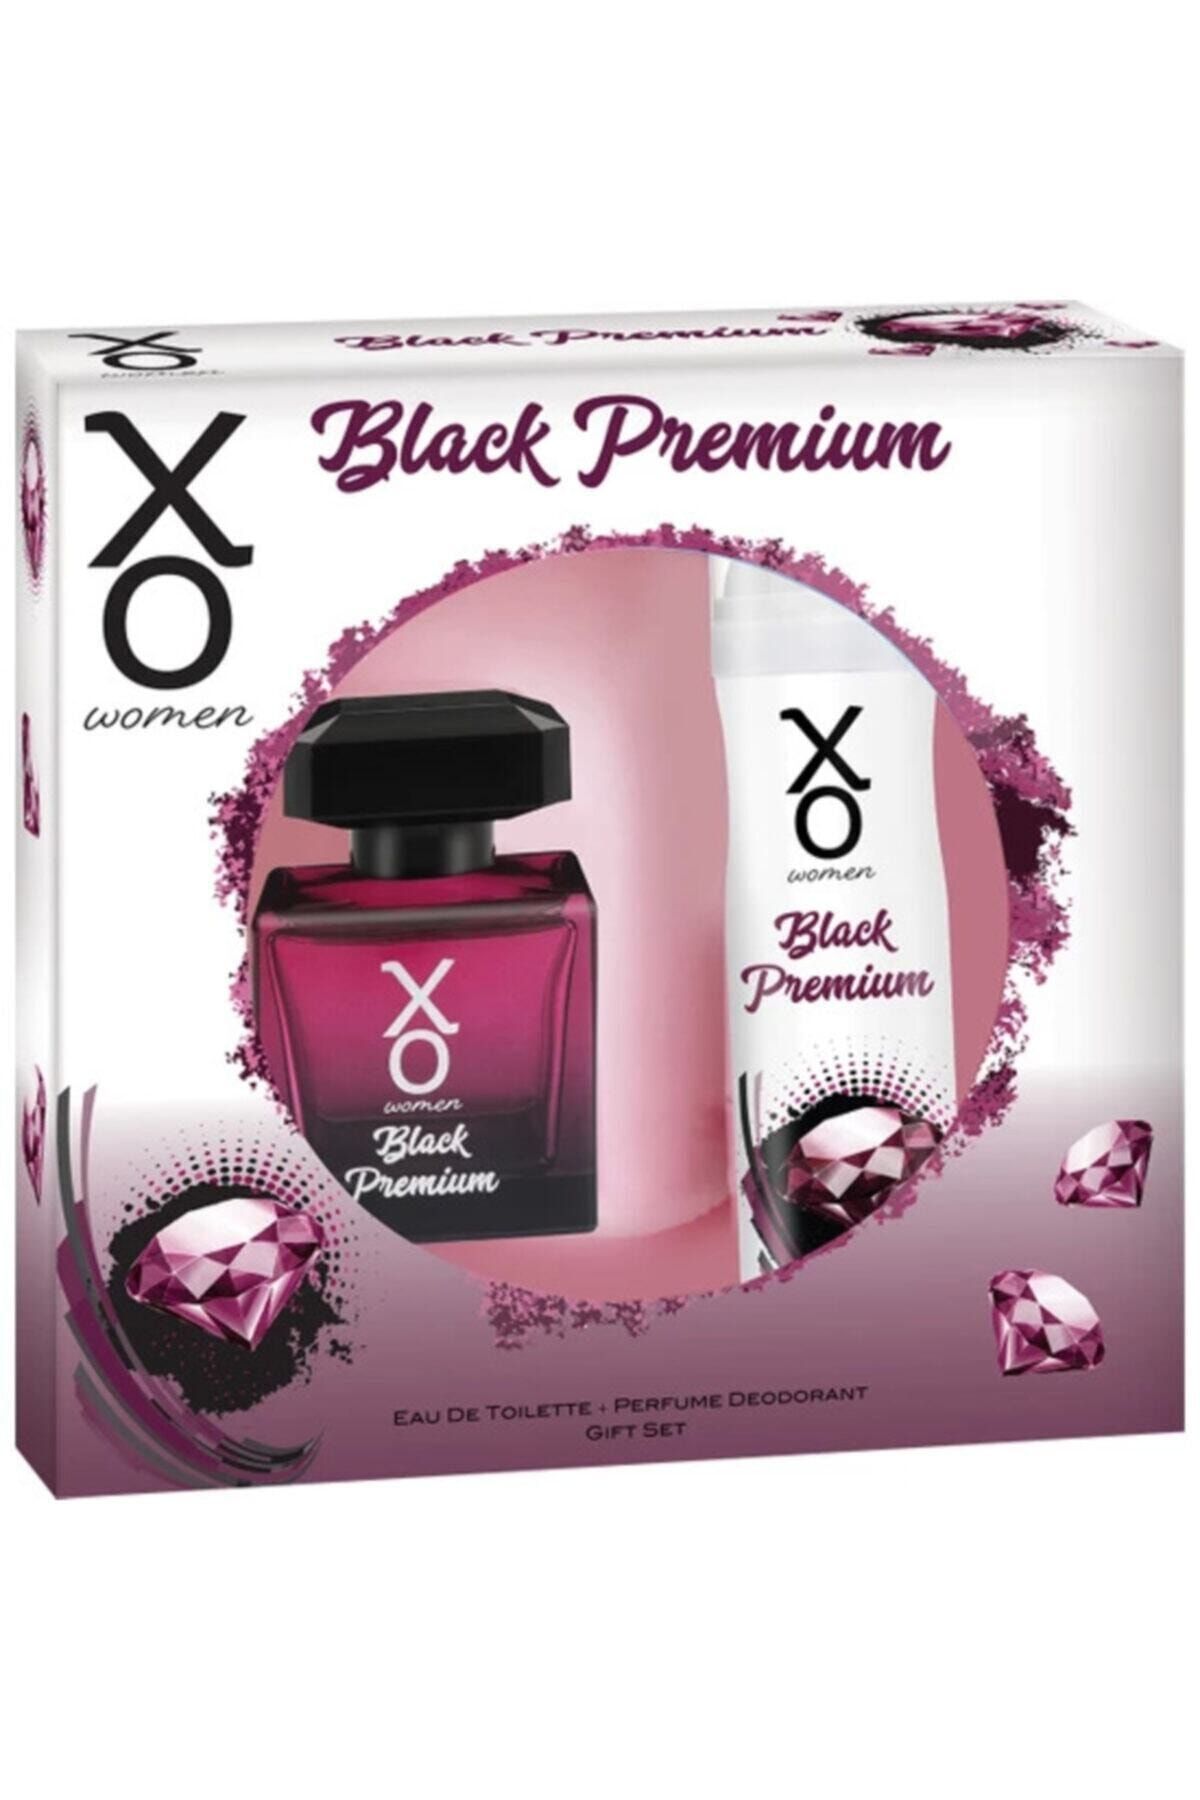 Xo Orıjınal Black Premıum Kadın Parfüm Seti 100 Ml Edt + 125 Ml Deodorant For Women